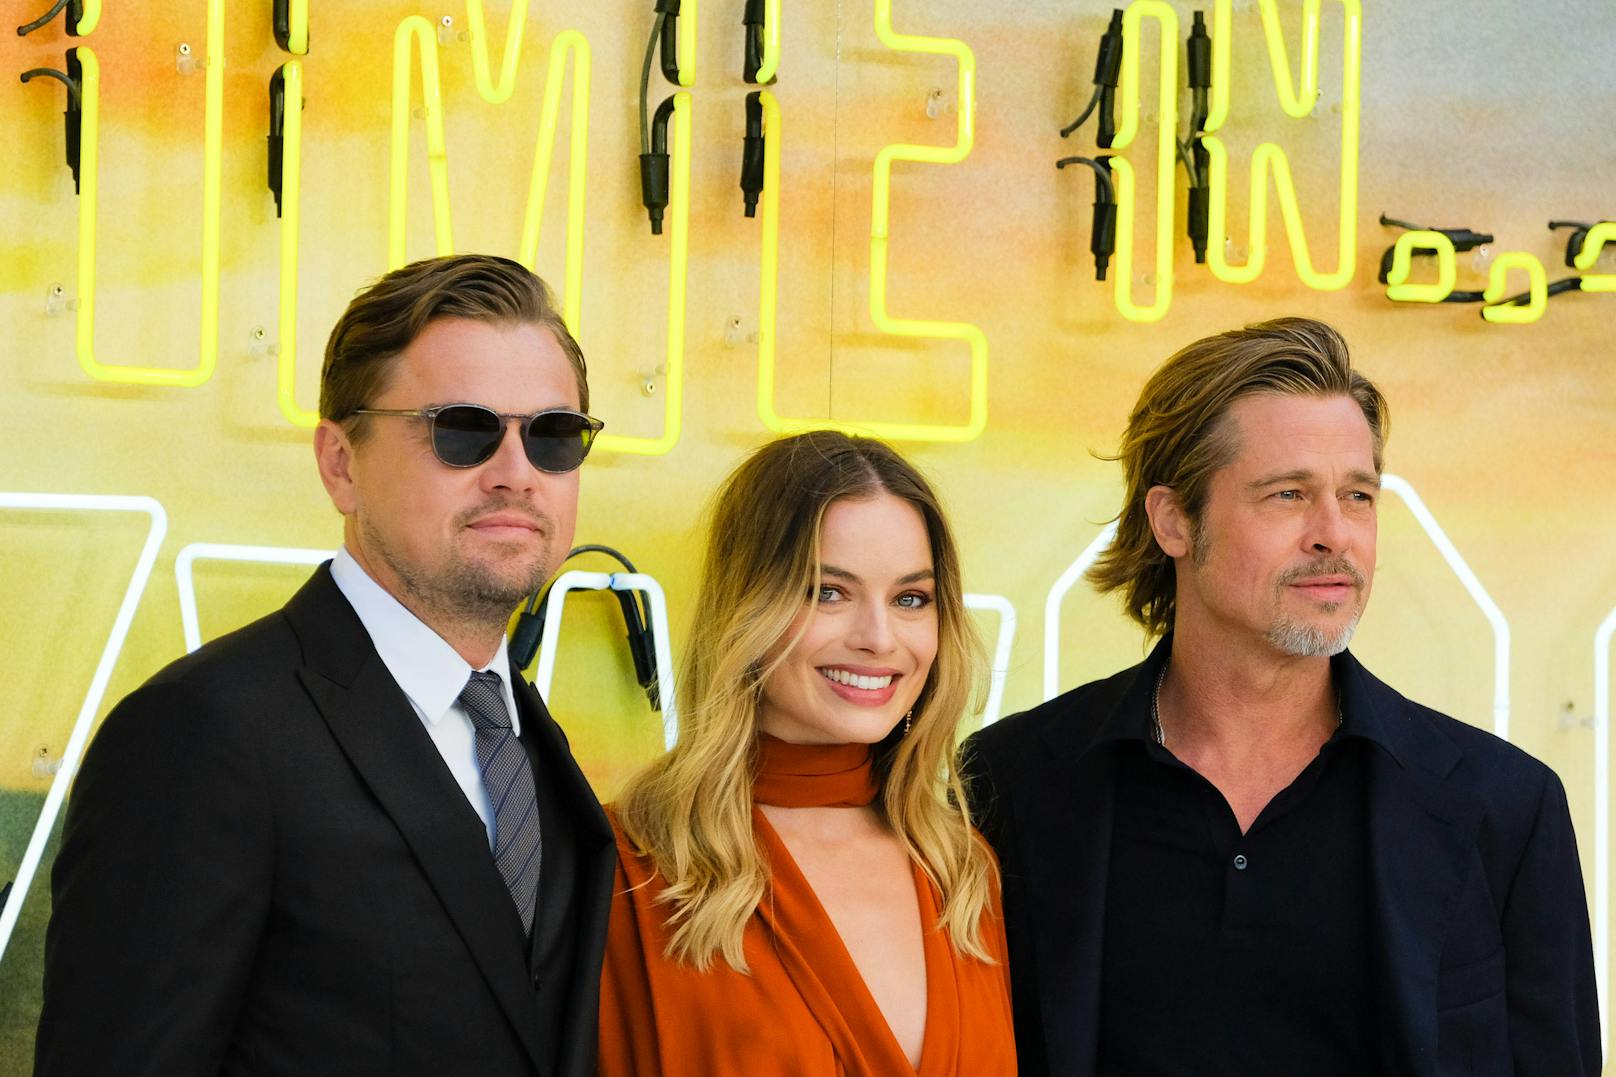 v.l.n.r. Leonardo DiCaprio, Margot Robbie und Brad Pitt zeigen sich makellos bei der 'Once Upon a Time in Hollywood' London Premiere.